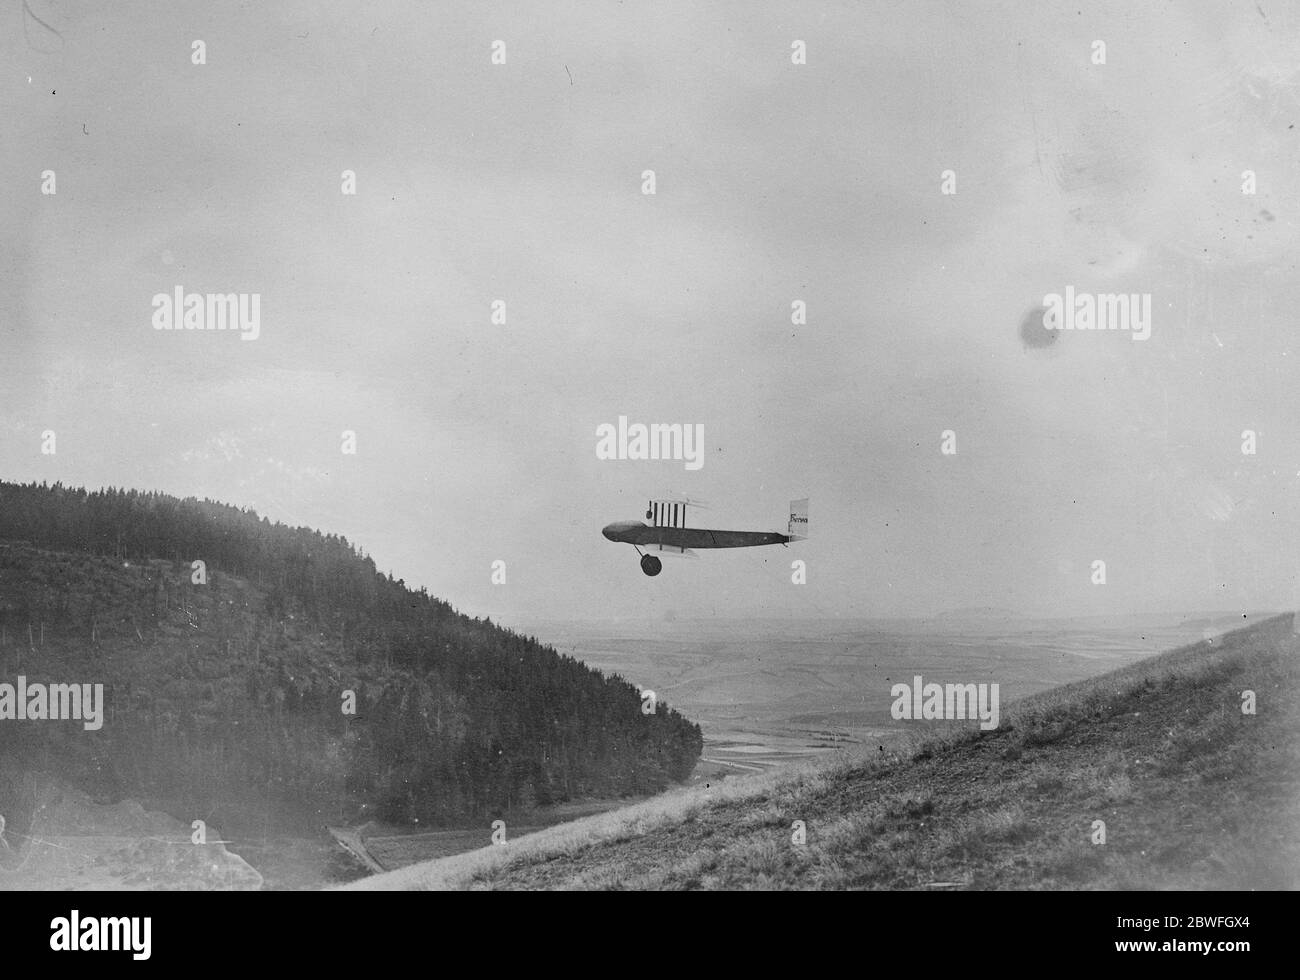 Remarquable rencontre aérienne sans moteur Airman Bossoutrot effectuant un vol remarquable le 12 août 1922 Banque D'Images